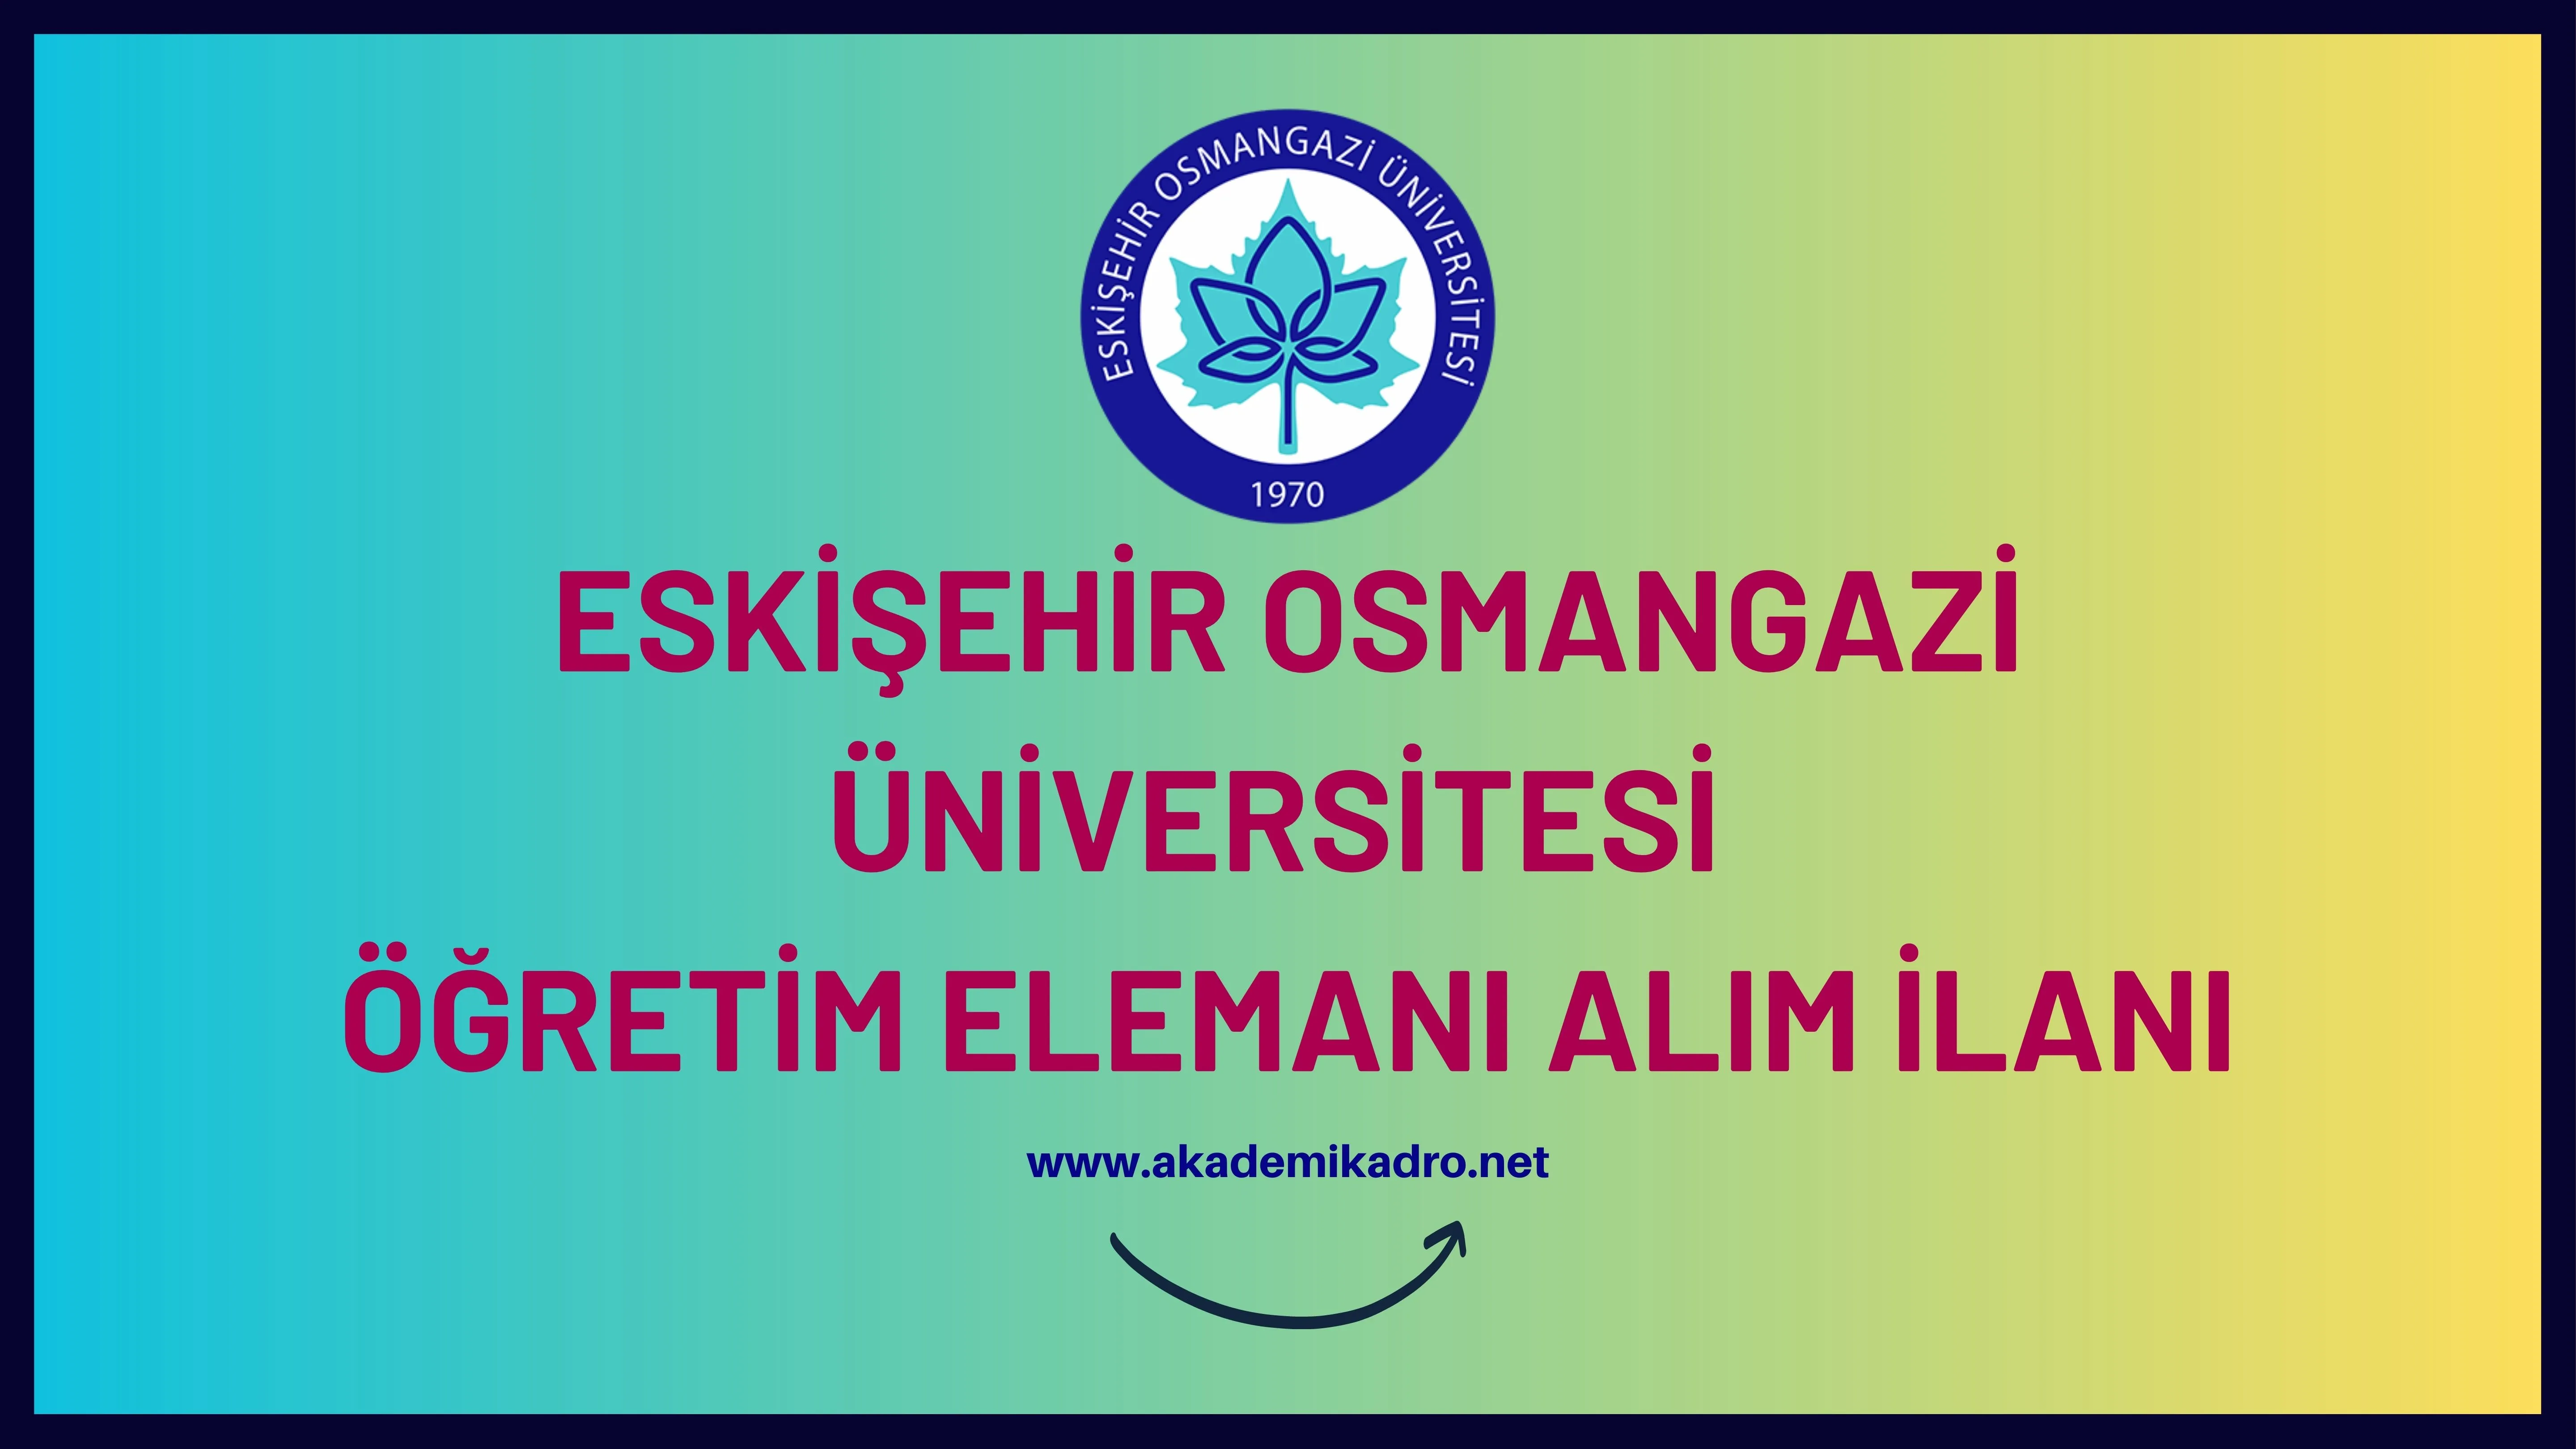 Eskişehir Osmangazi Üniversitesi 5 Öğretim görevlisi, 5 Araştırma görevlisi ve 42 Öğretim üyesi olmak üzere 52 Öğretim elemanı alacak.